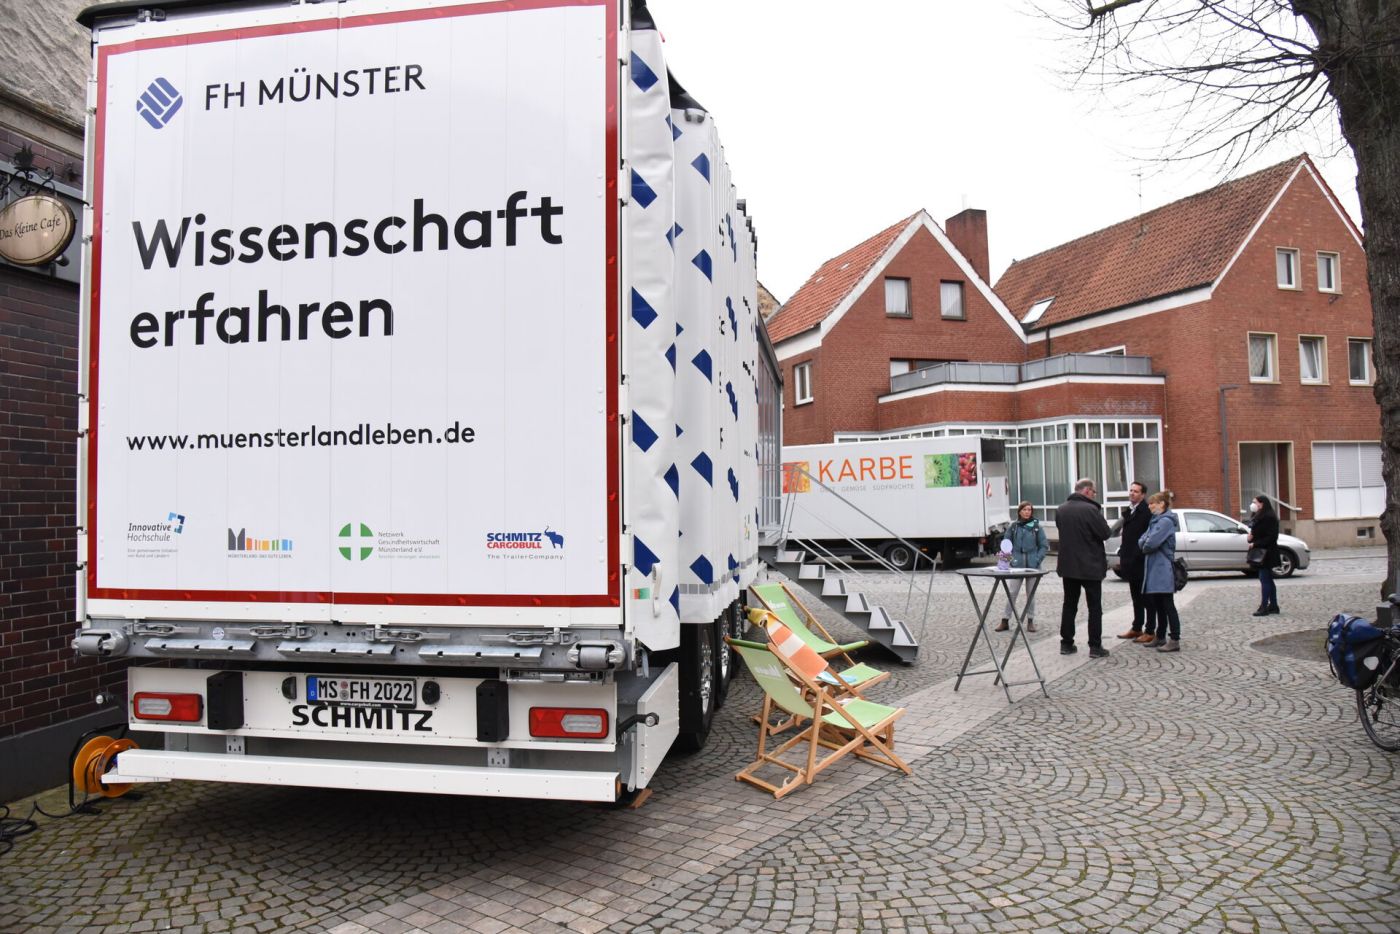 Ein Truck mit der Aufschrit "FH Münster", "Wissenschaft erfahren" und "www.muensterlandleben.de" (Foto: FH Münster/Frederik Tebbe)